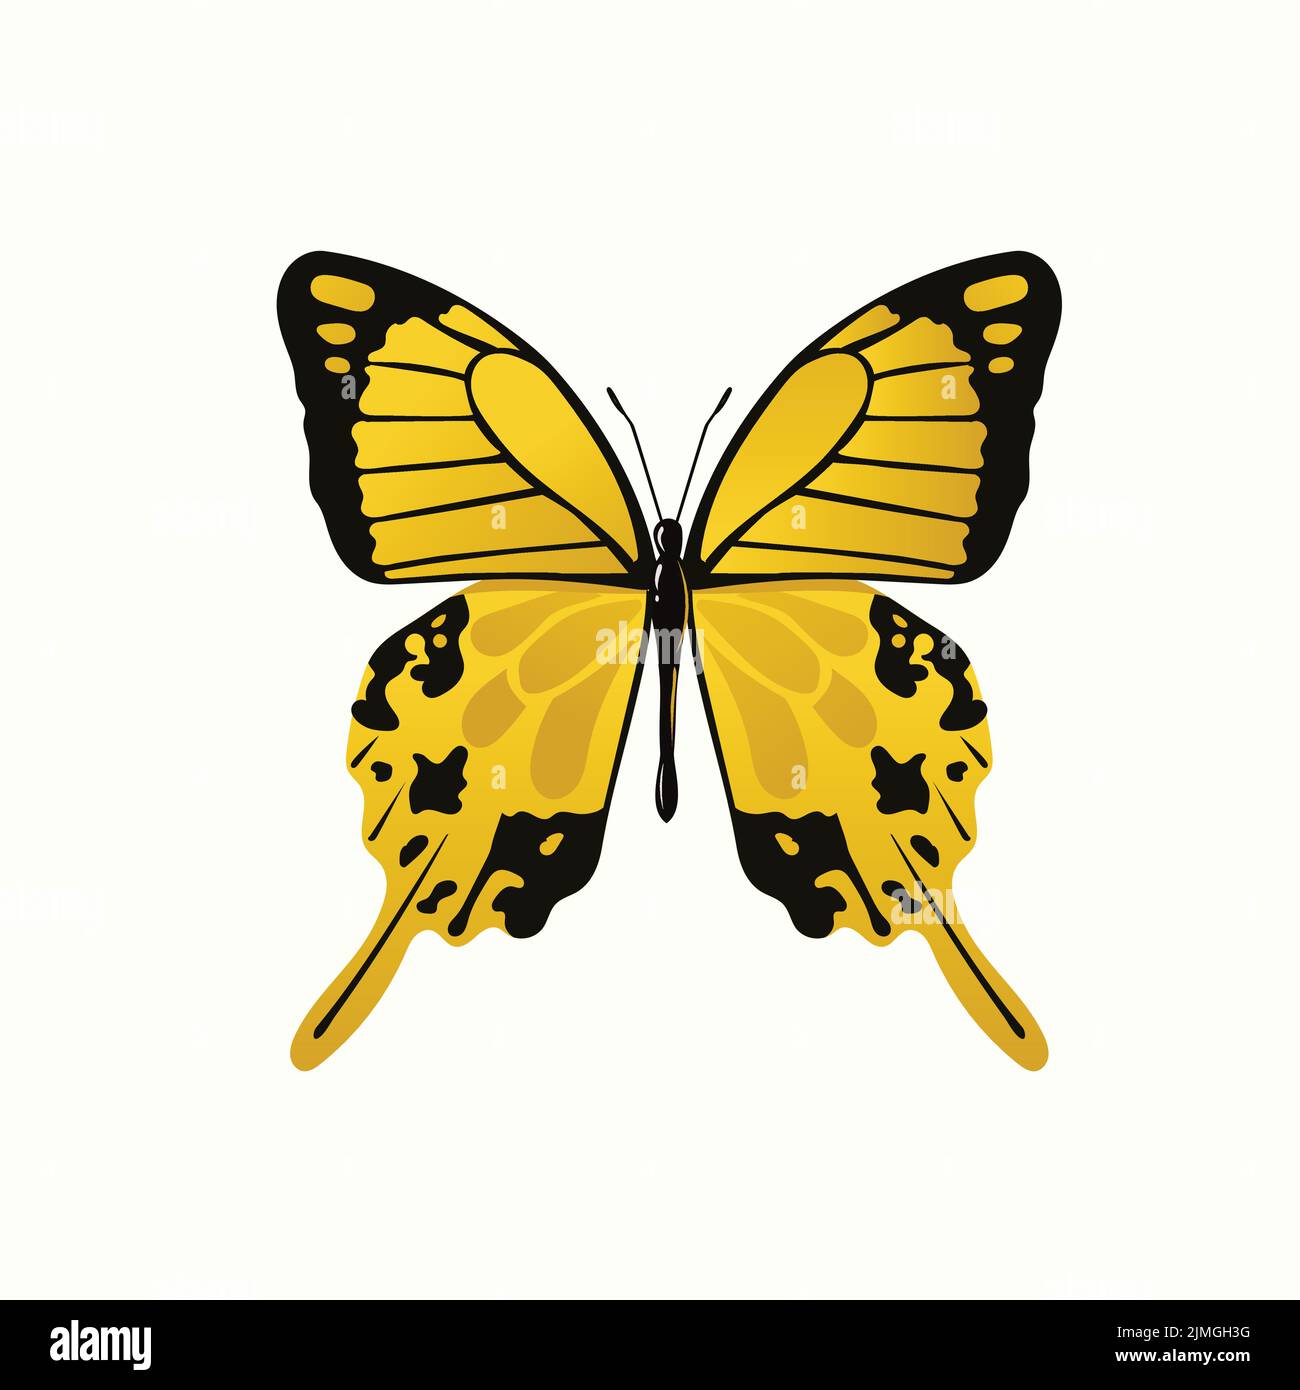 Motif vectoriel d'un papillon jaune monarque sur fond blanc Illustration de Vecteur